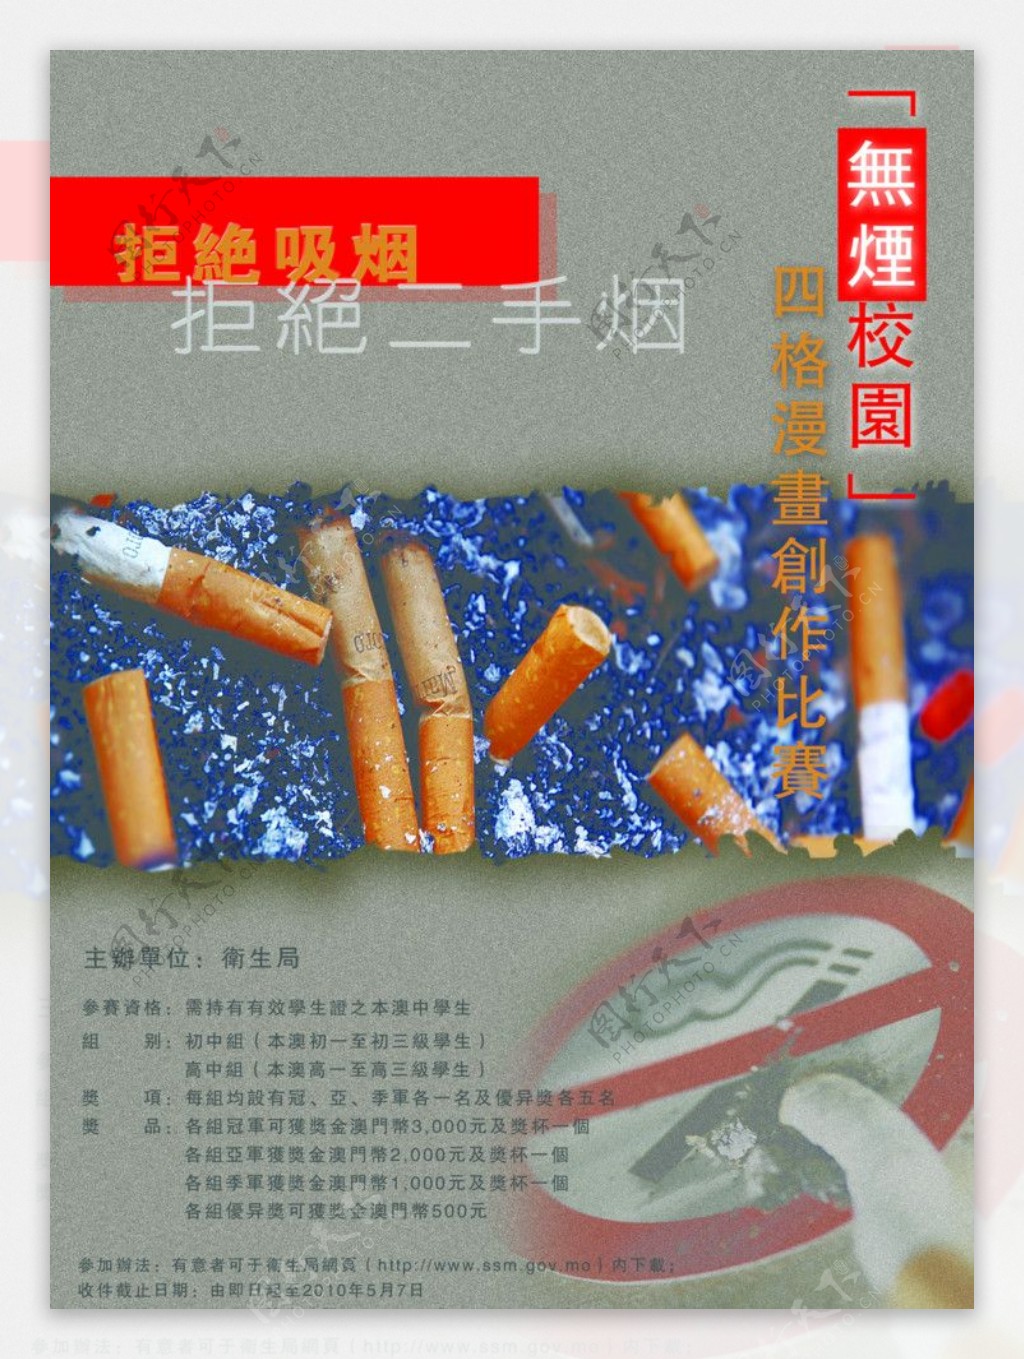 禁止吸烟拒绝吸烟图片